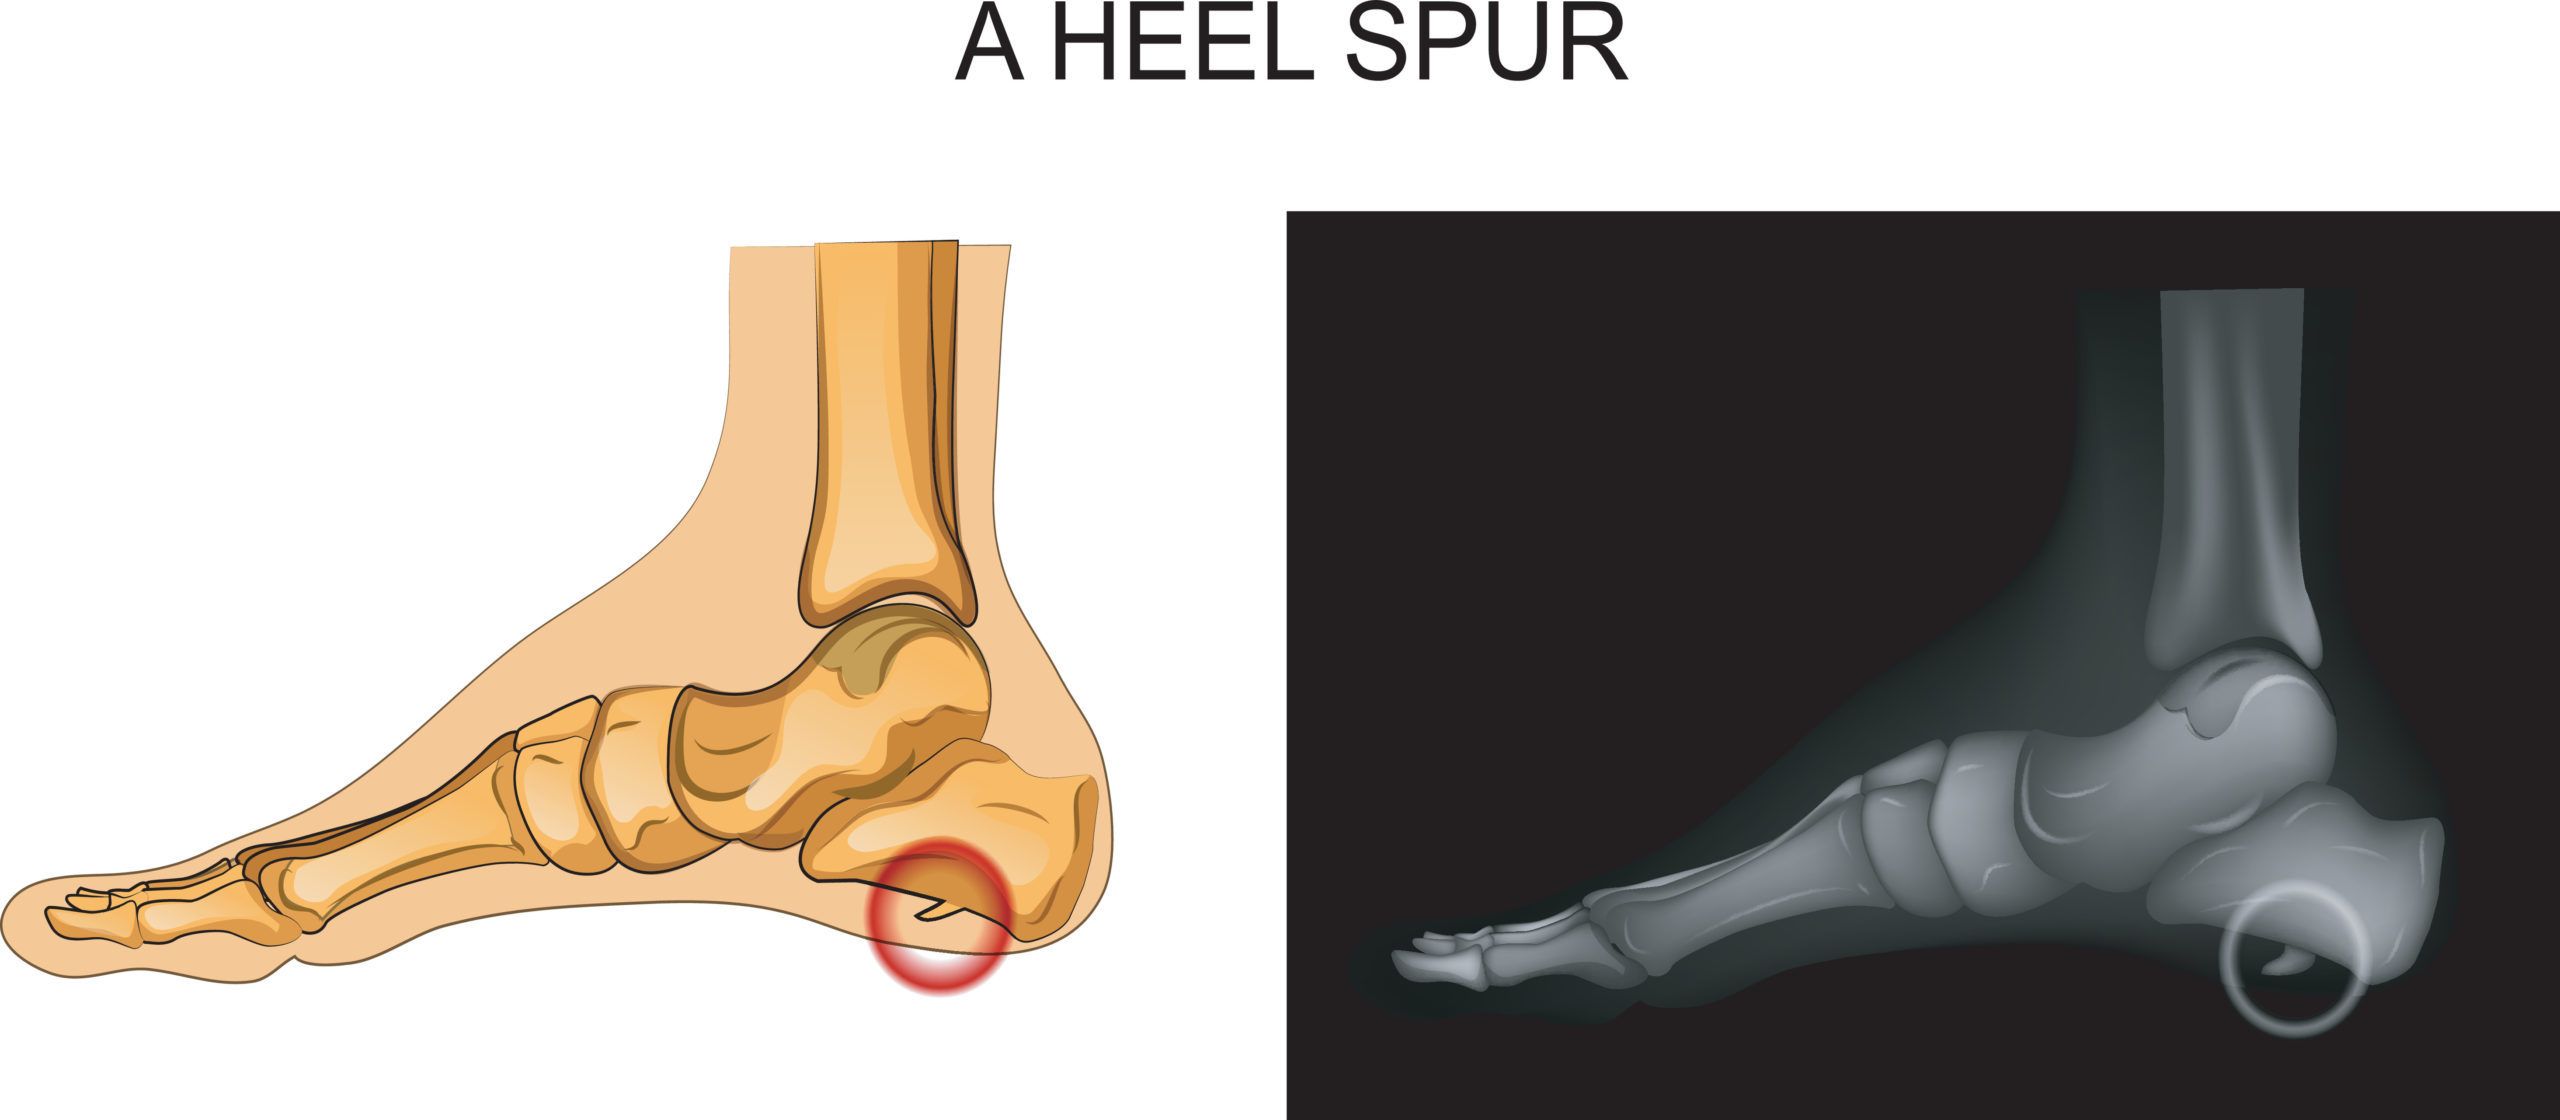 Heel Spurs: Causes & Treatment | Liebscher & Bracht